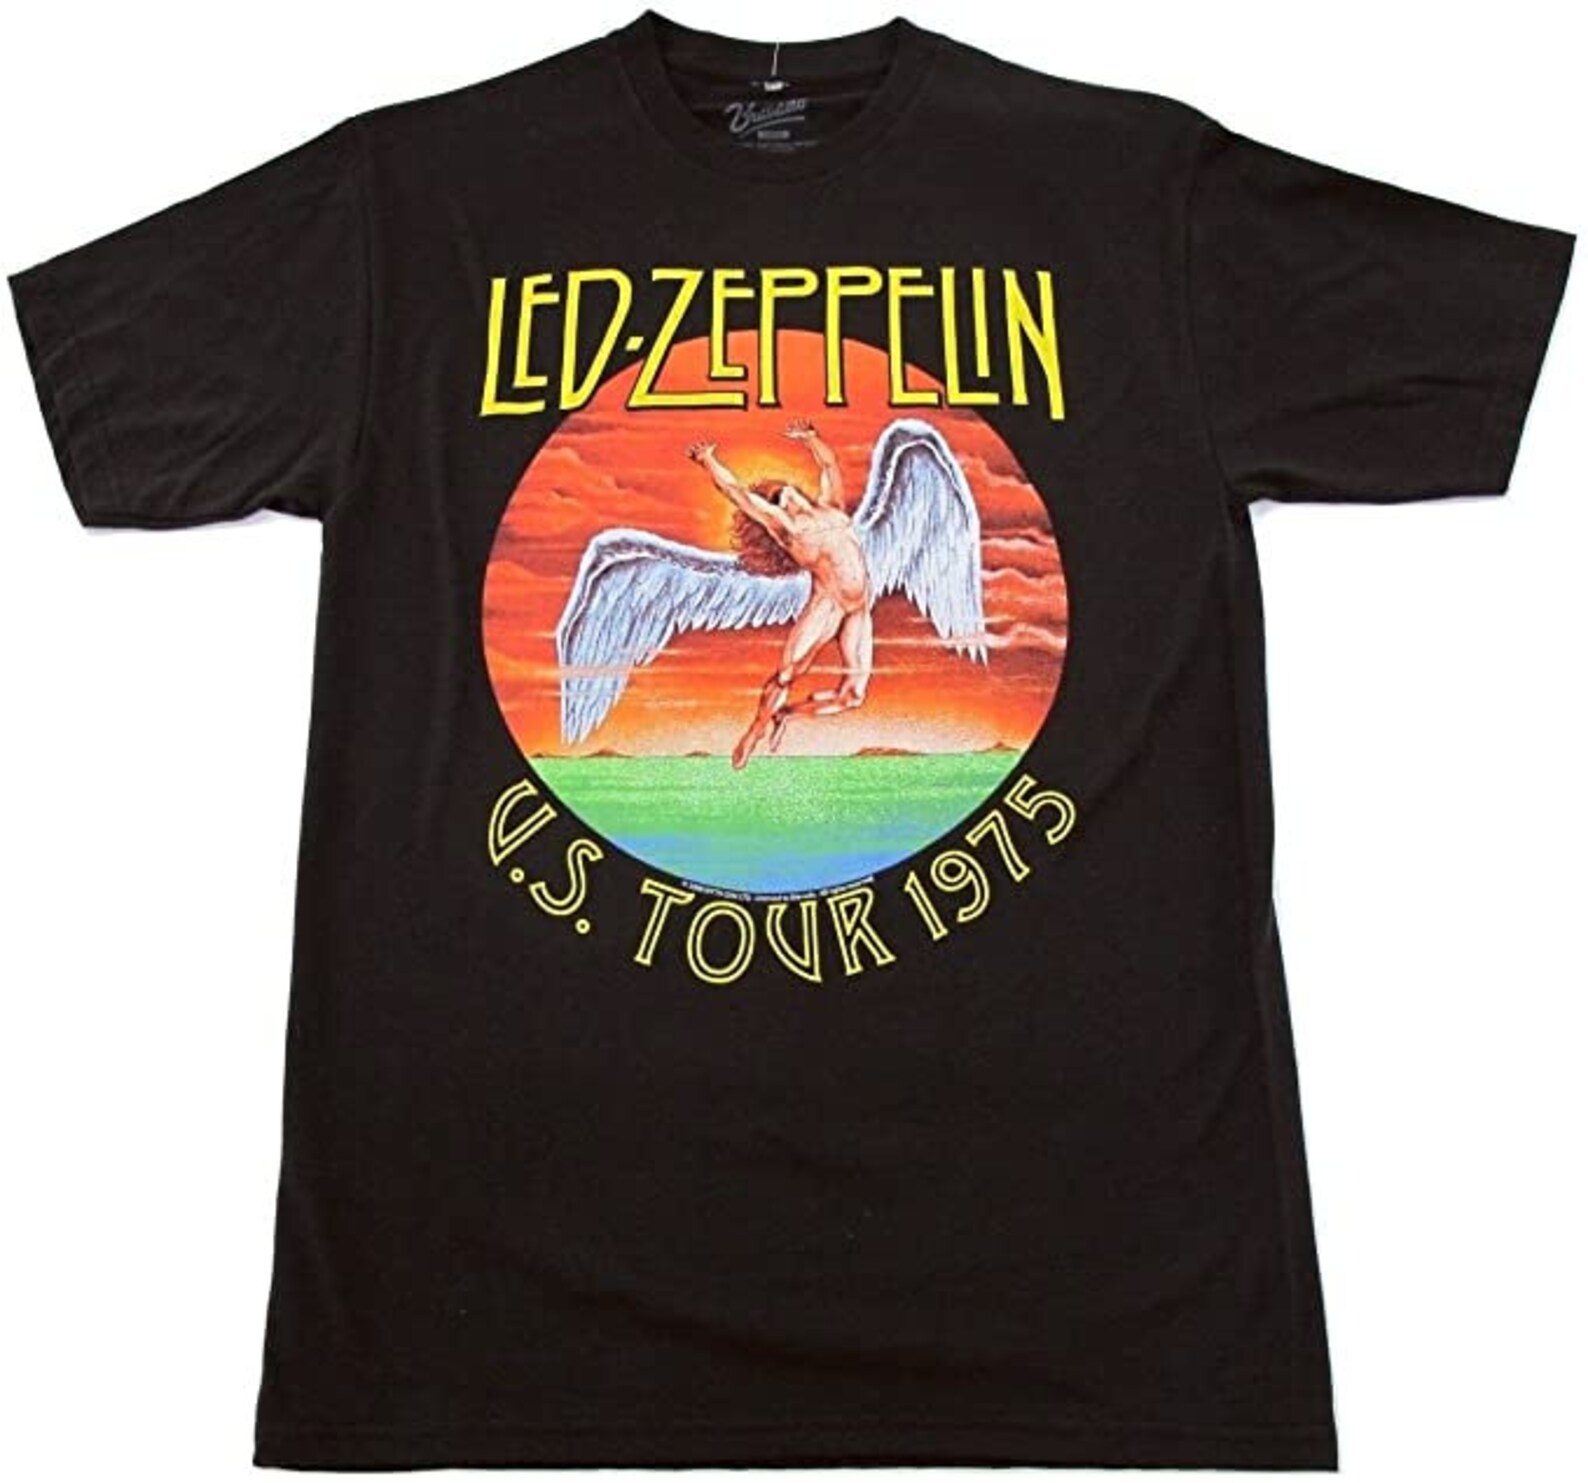 led zeppelin on tour shirt